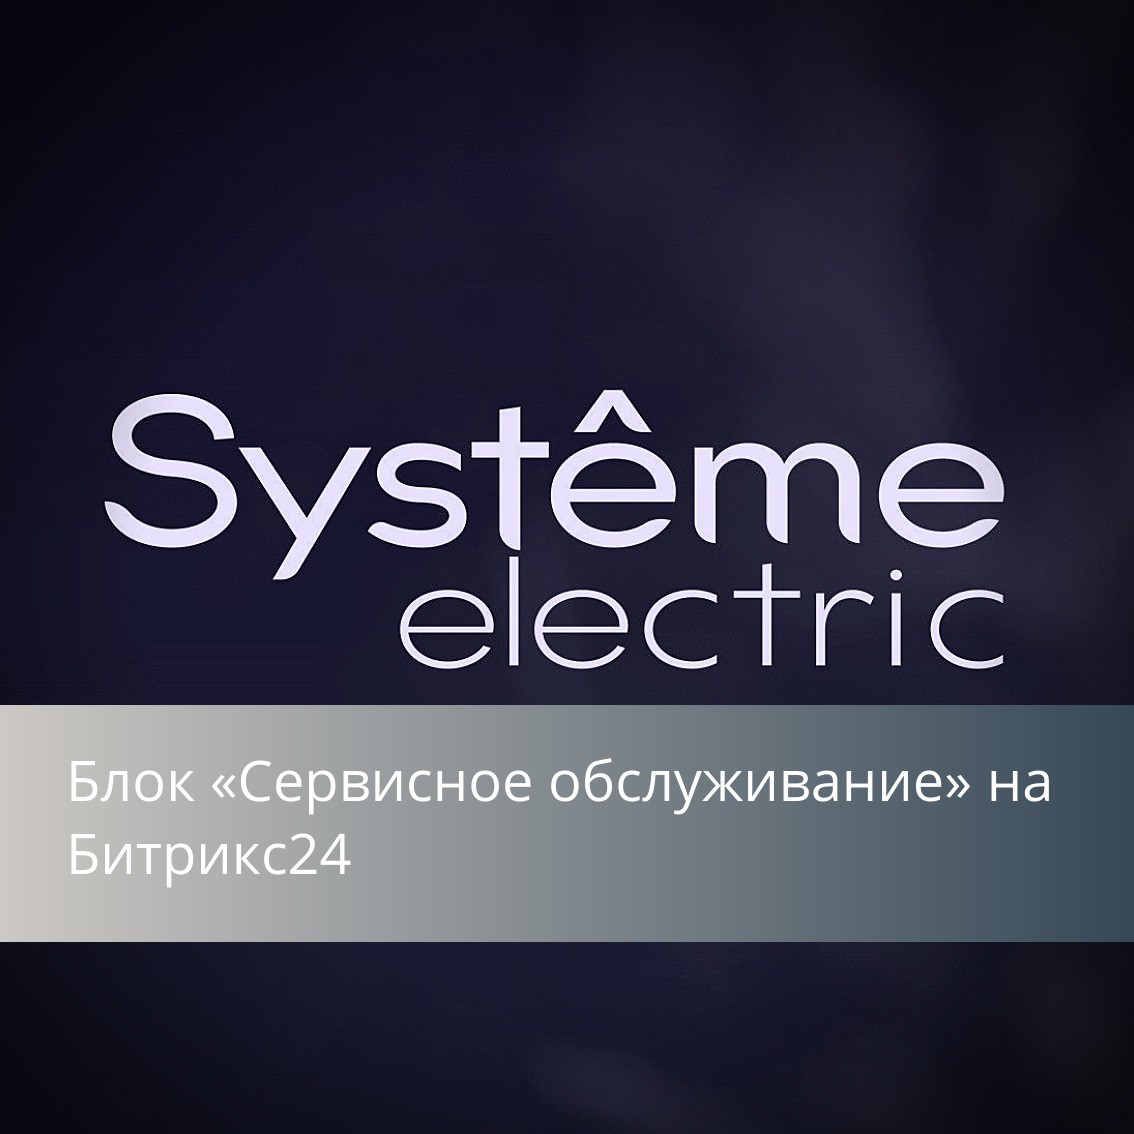 Проектный опыт: блок «Сервисное обслуживание» на Битрикс24 для Systeme Electric